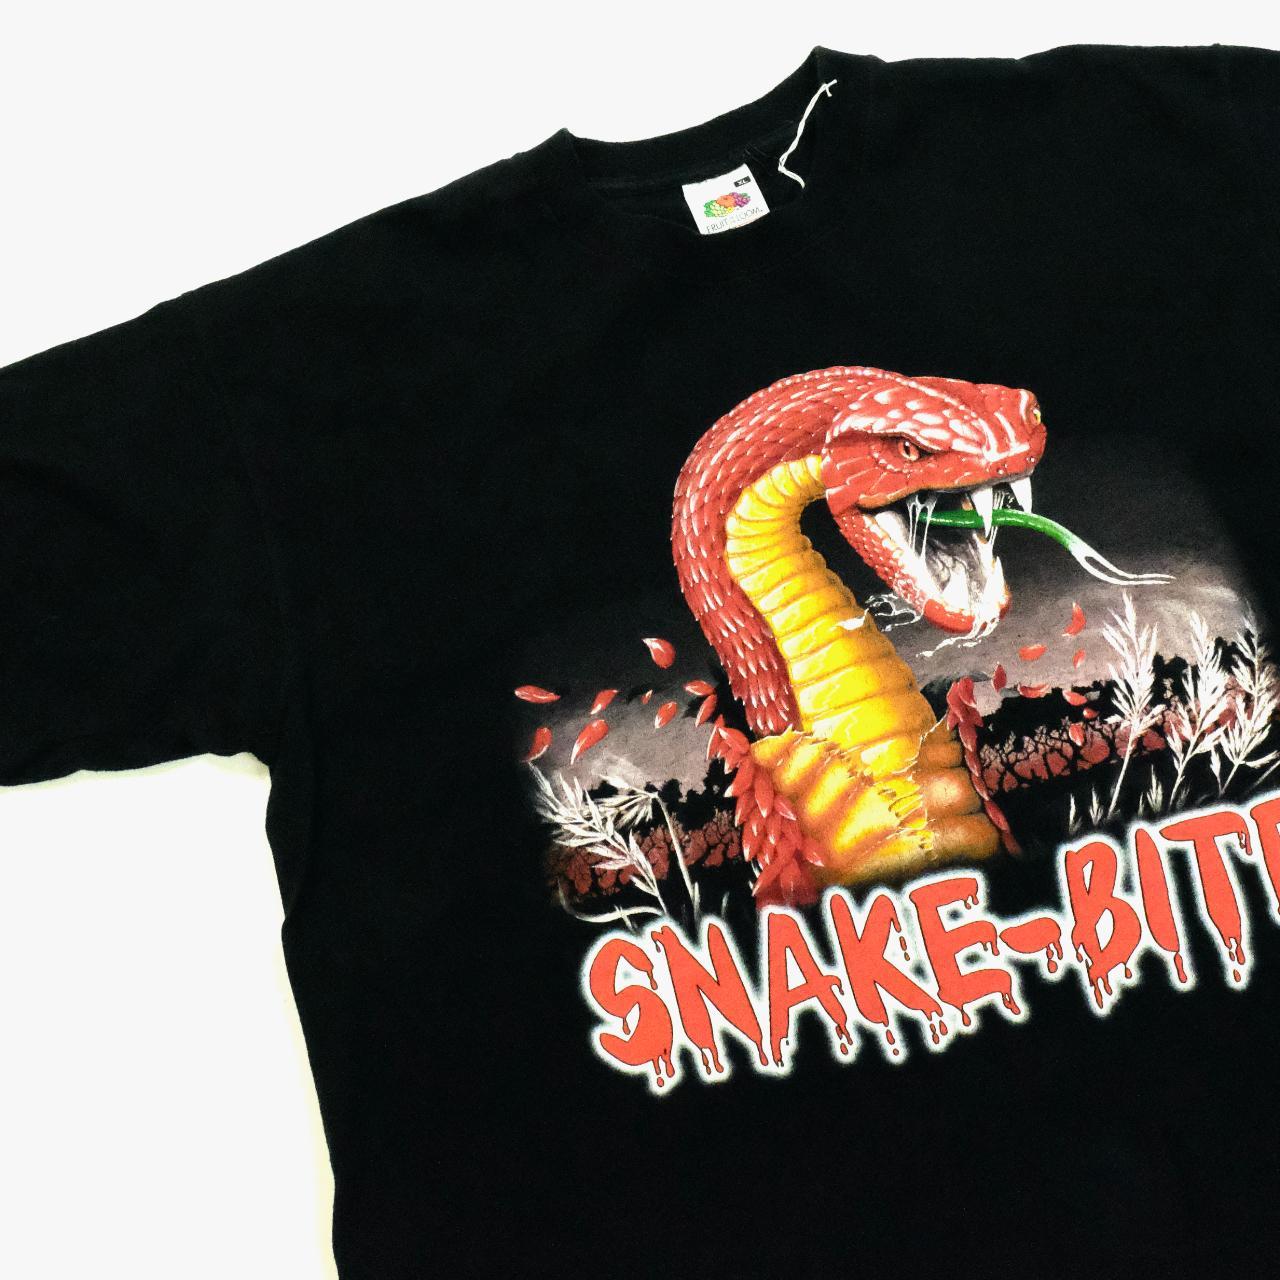 Snake Bite T-shirt